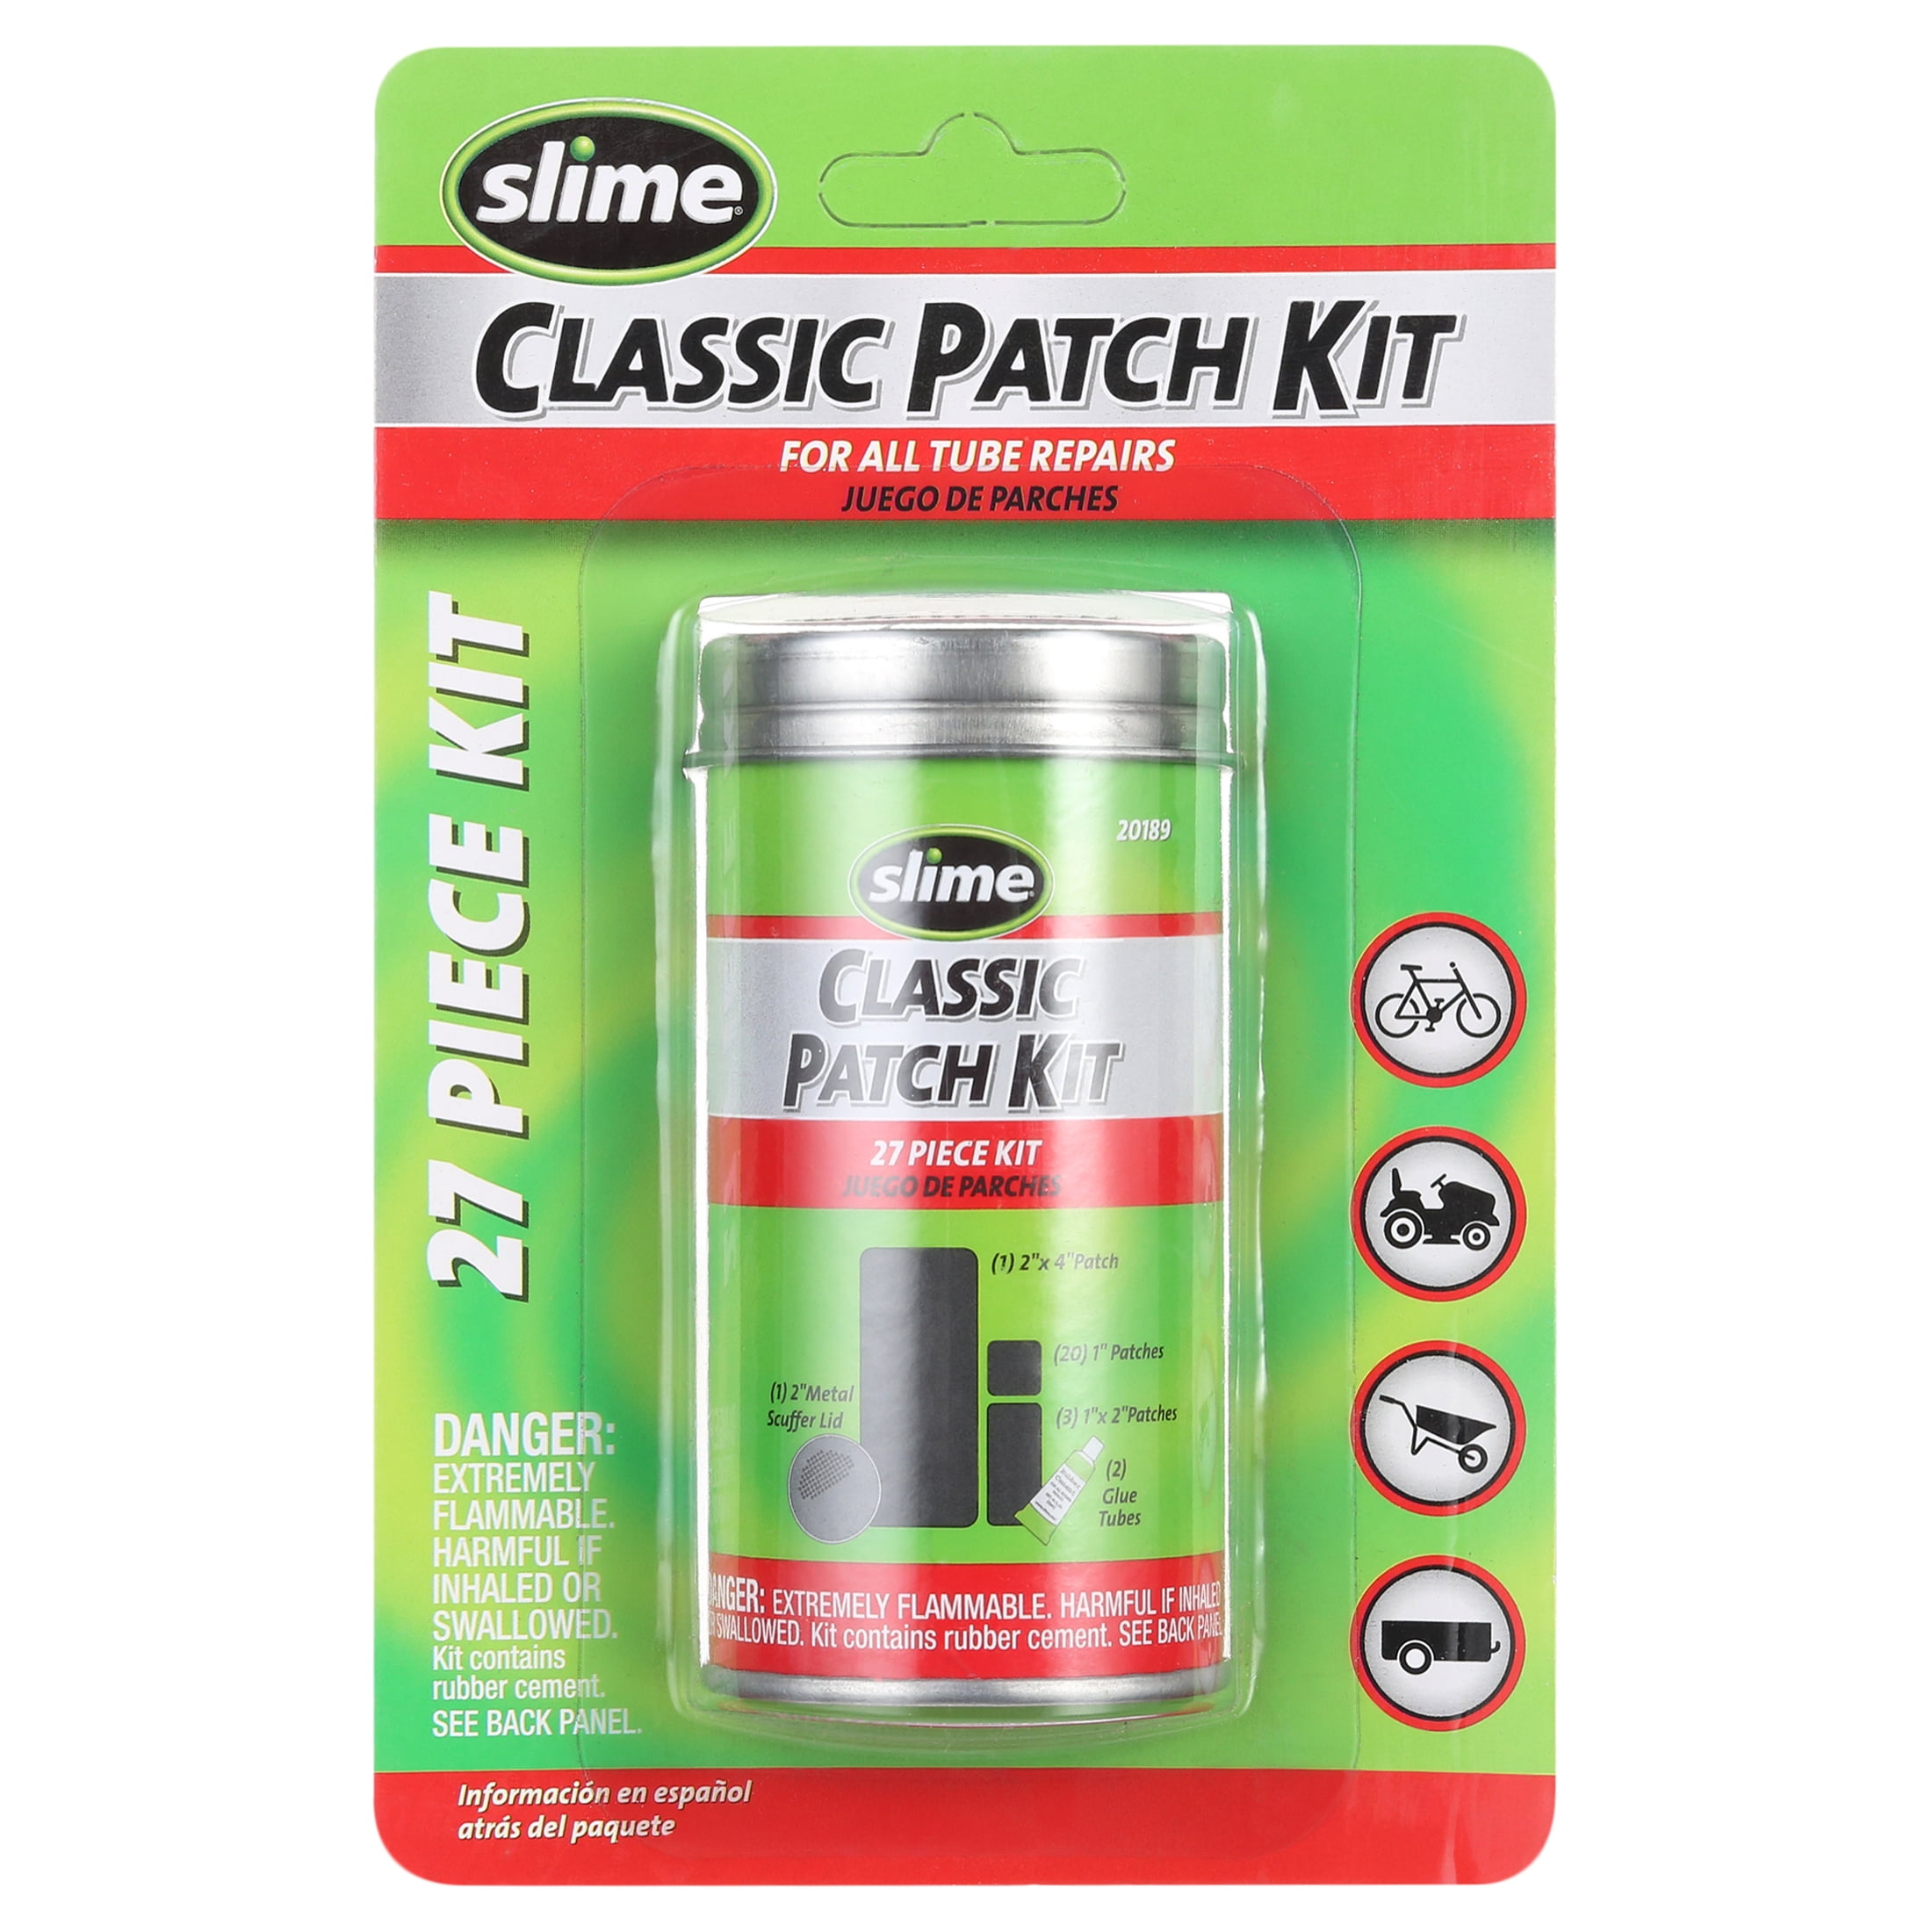 Slime 27 Piece Patch Kit 